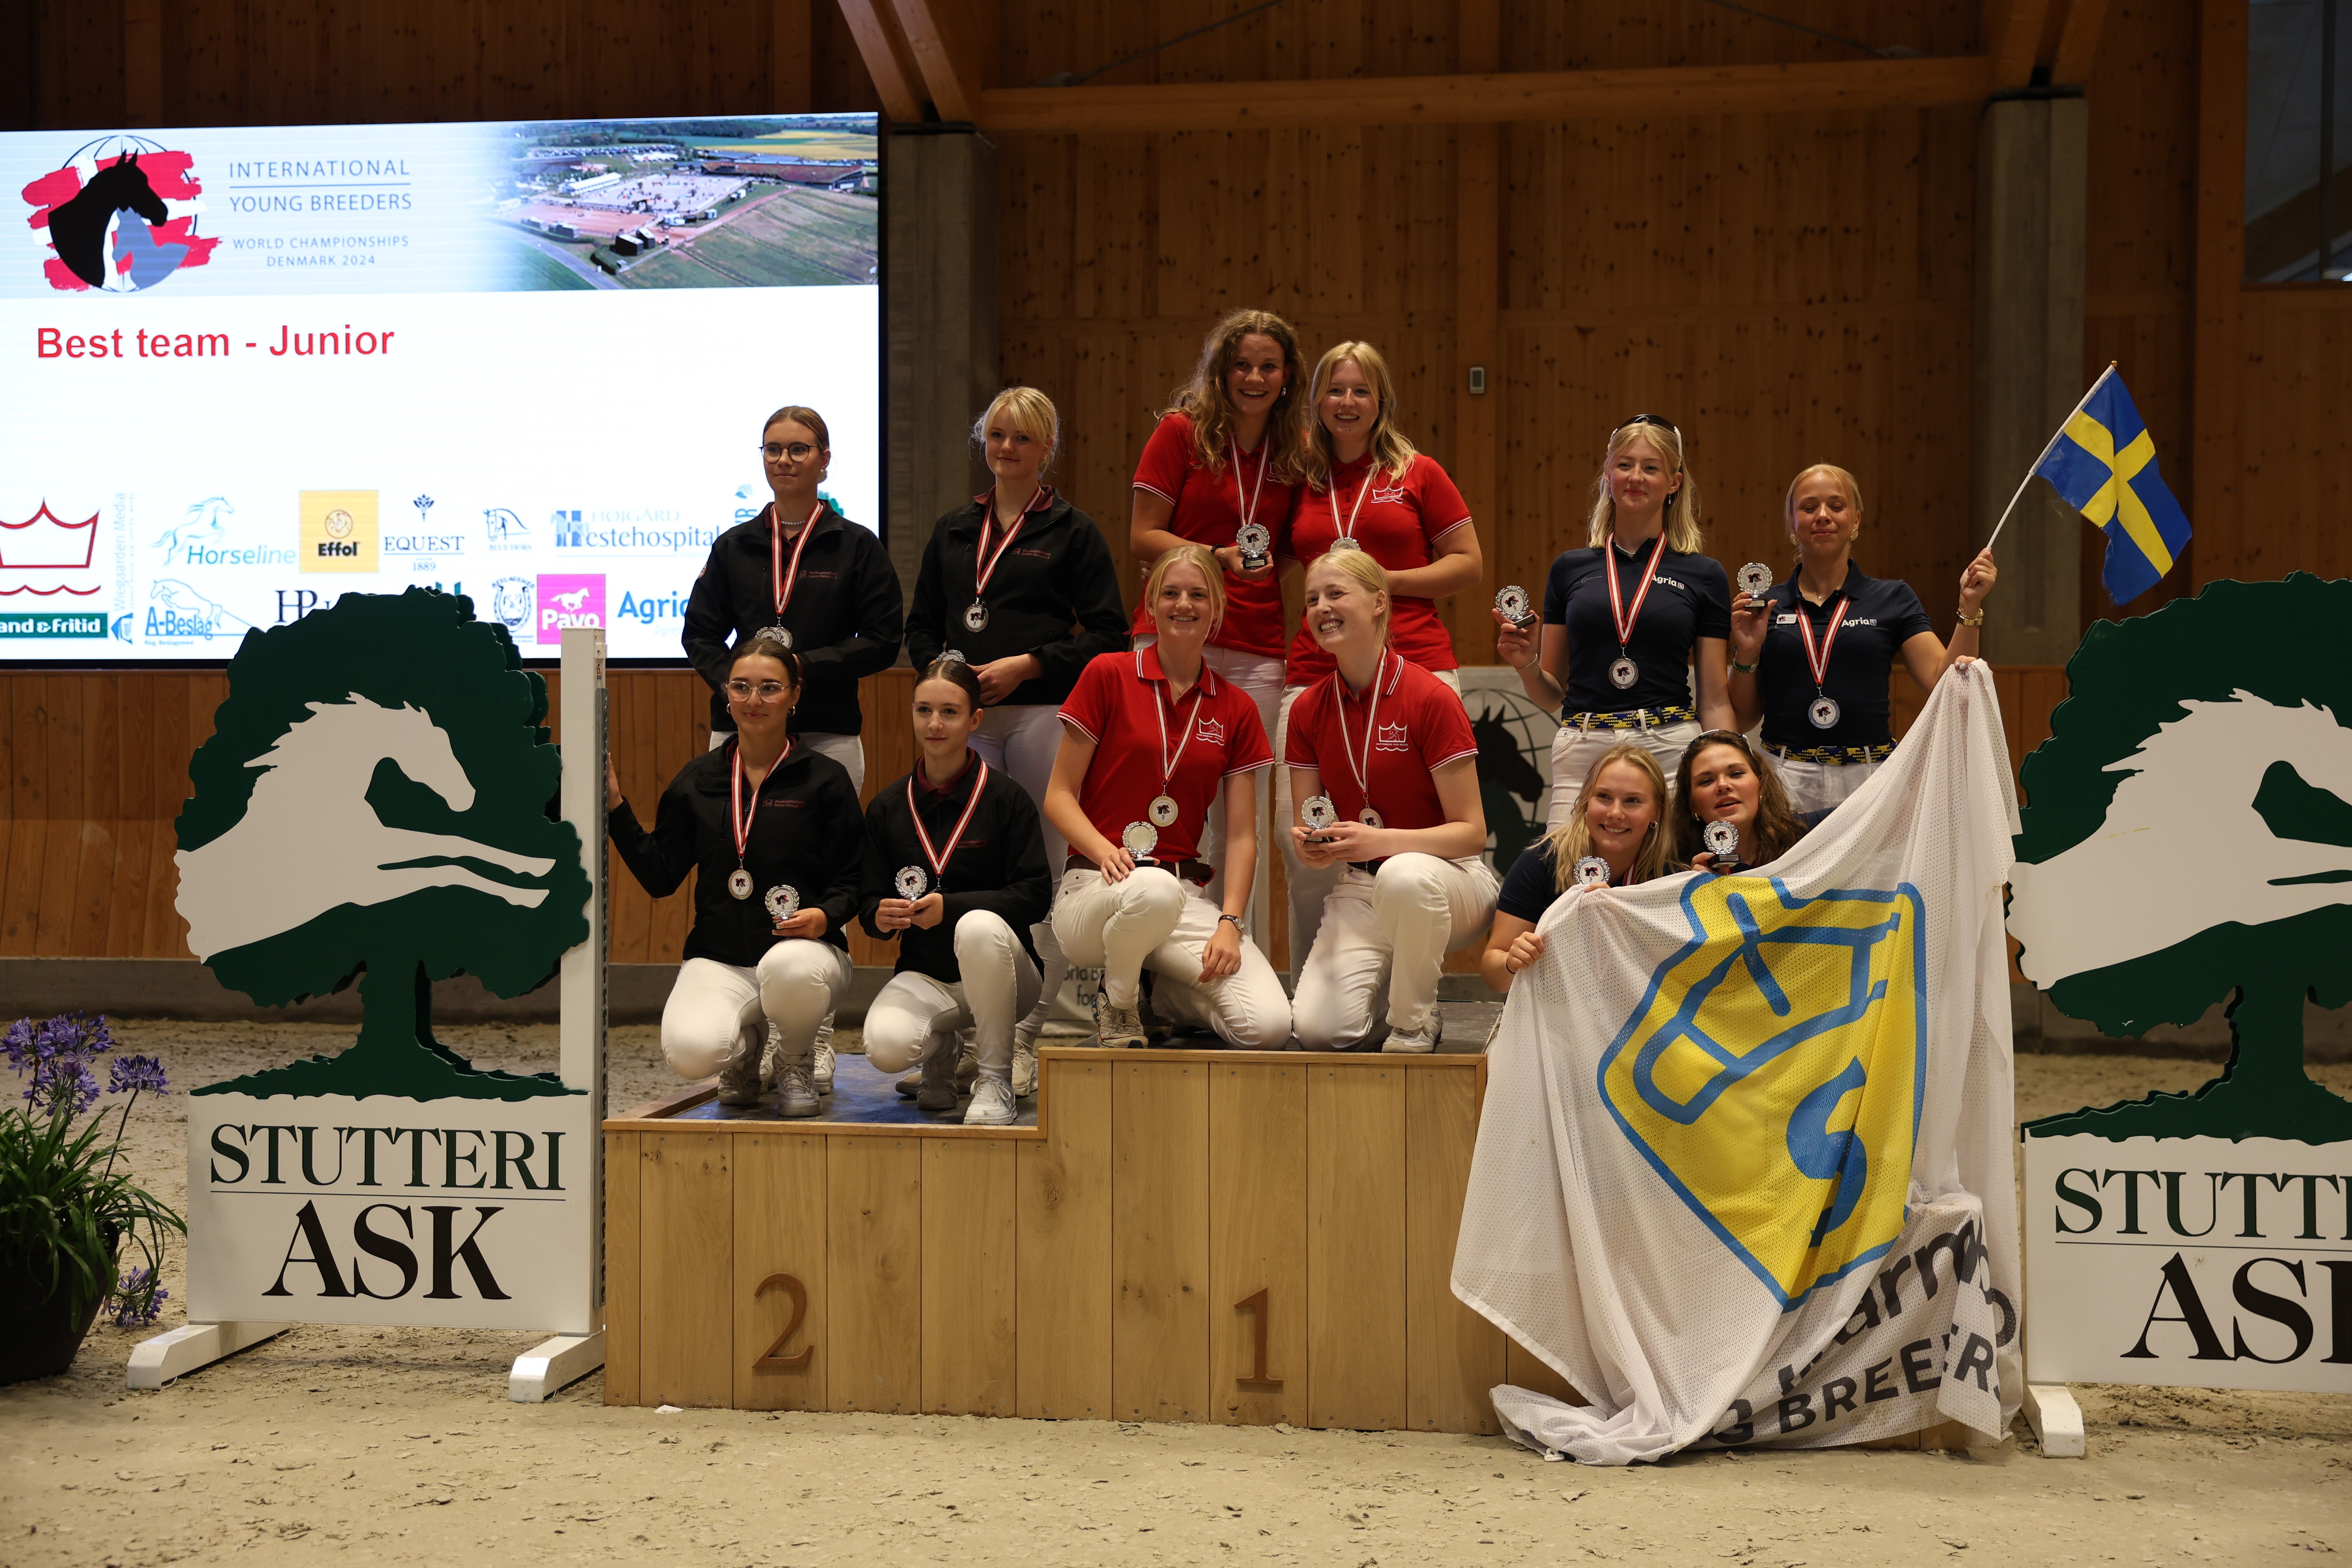 Photo 3: Best team - Junior: Danish Warmblood gold, silver Pferdezuchtverband Sachsen-Thüringen e.V. bronze Swedish Warmblood. Photo: Ridehesten.com